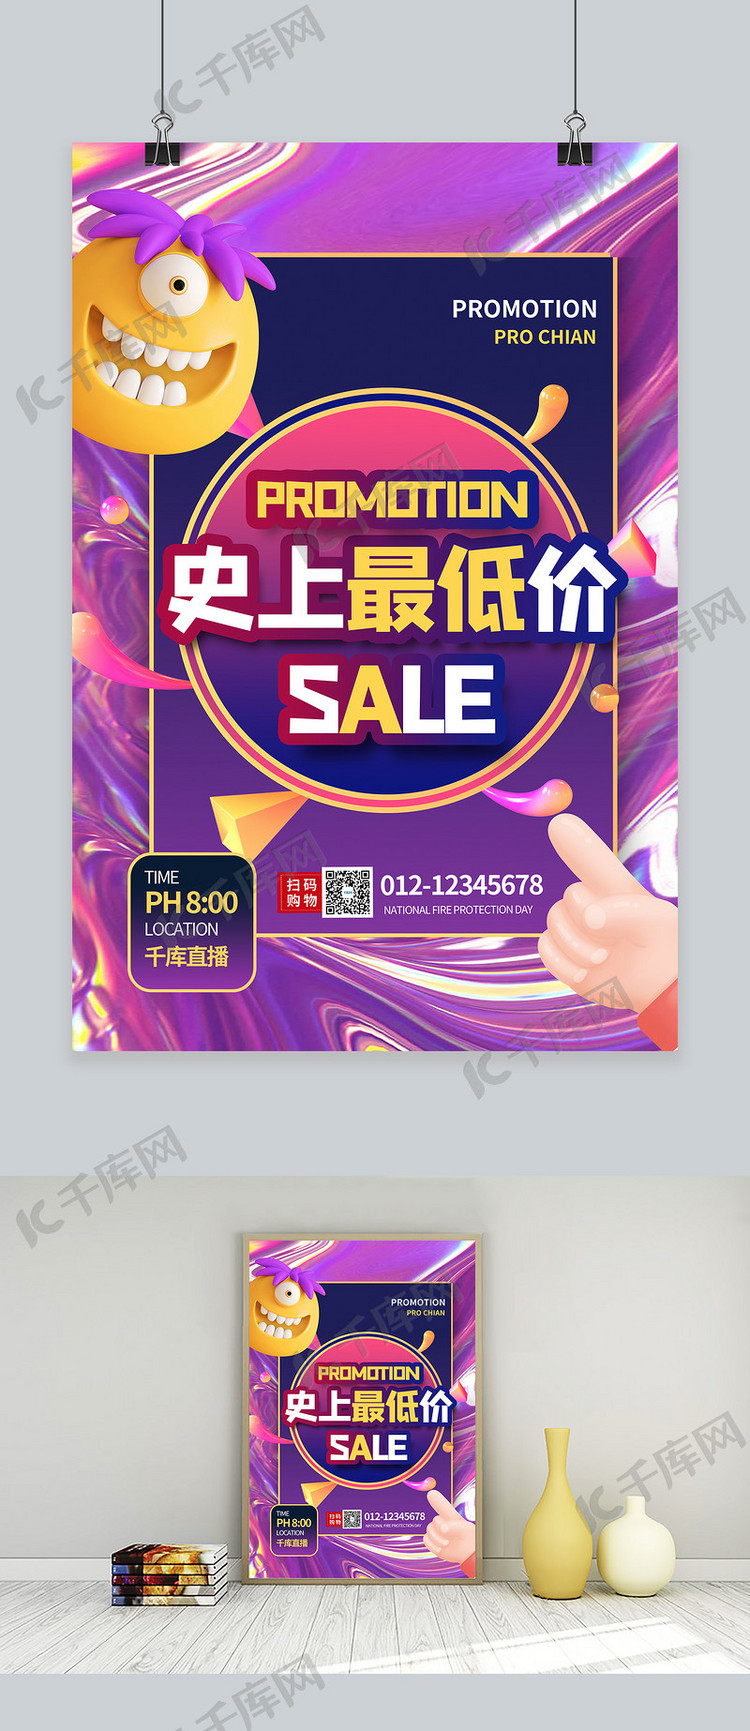 双11促销商品紫色酸性风海报